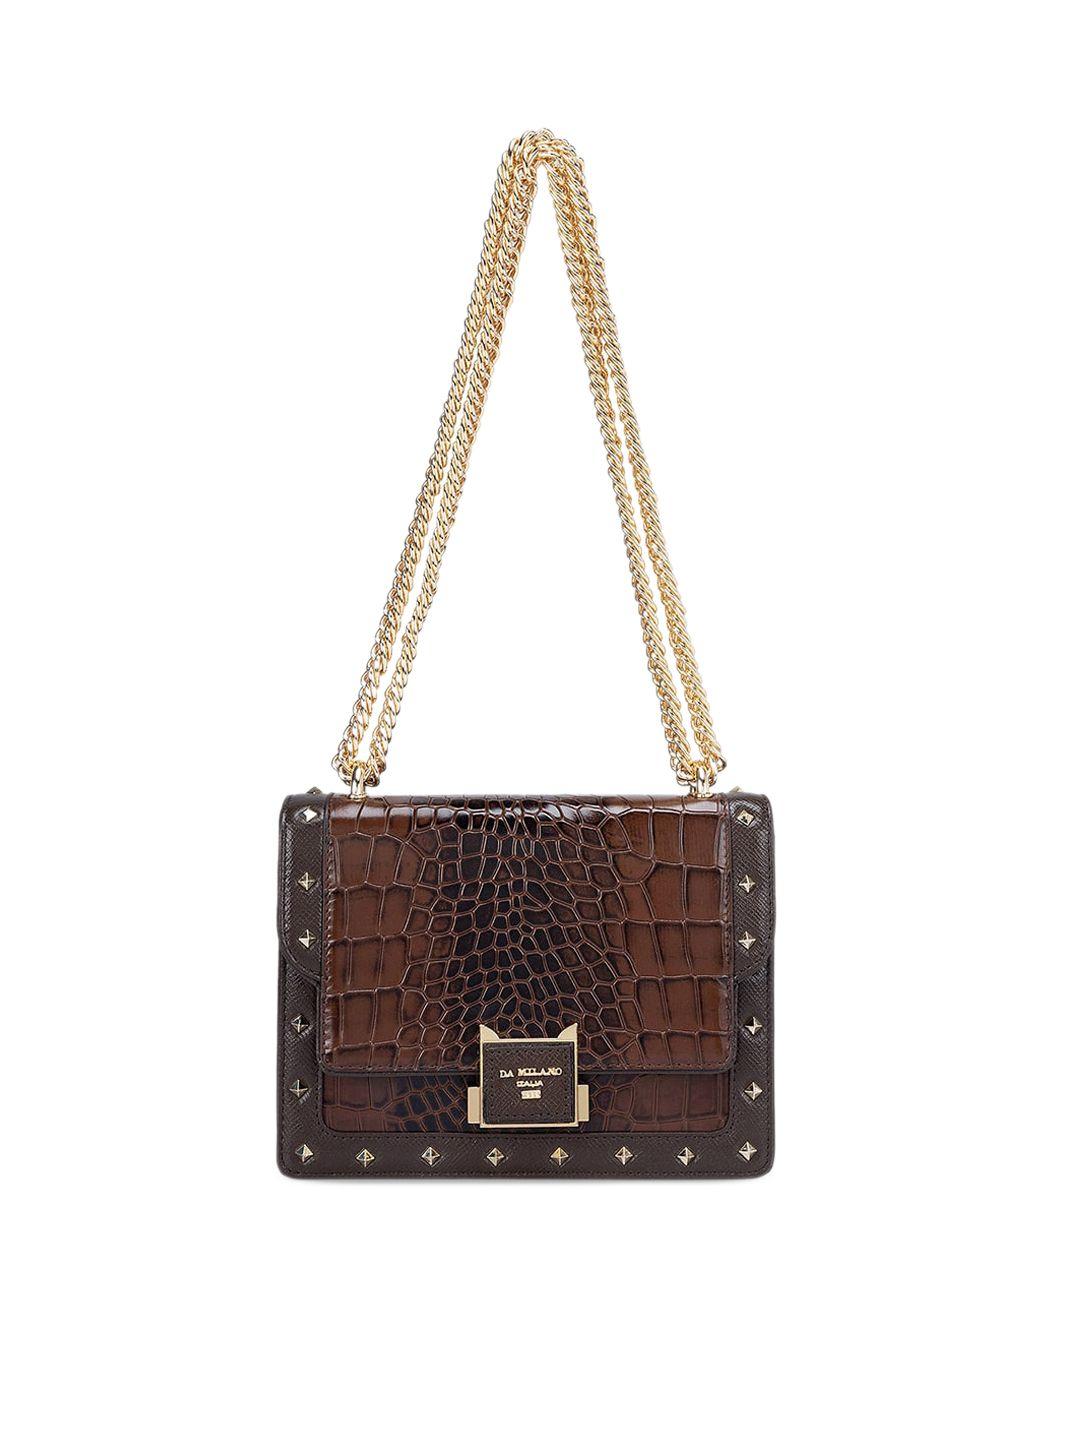 da milano textured embellished leather structured sling bag